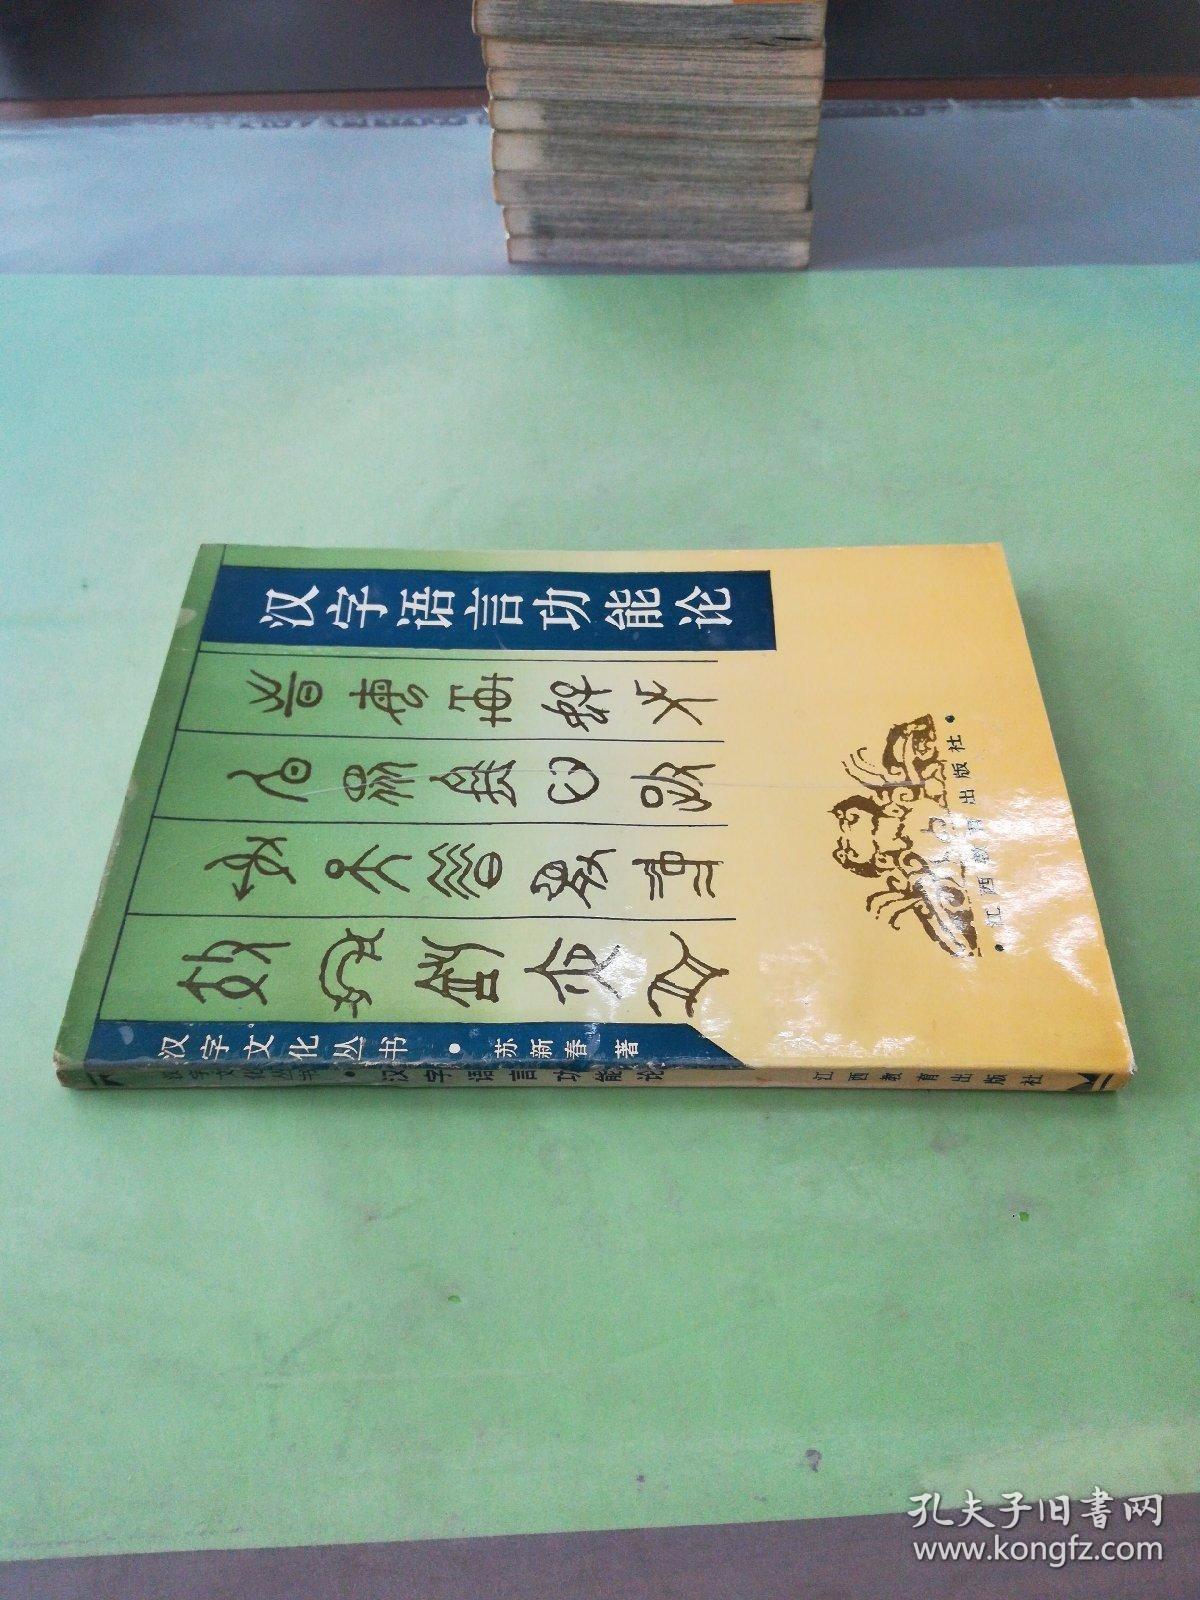 汉字语言功能论。